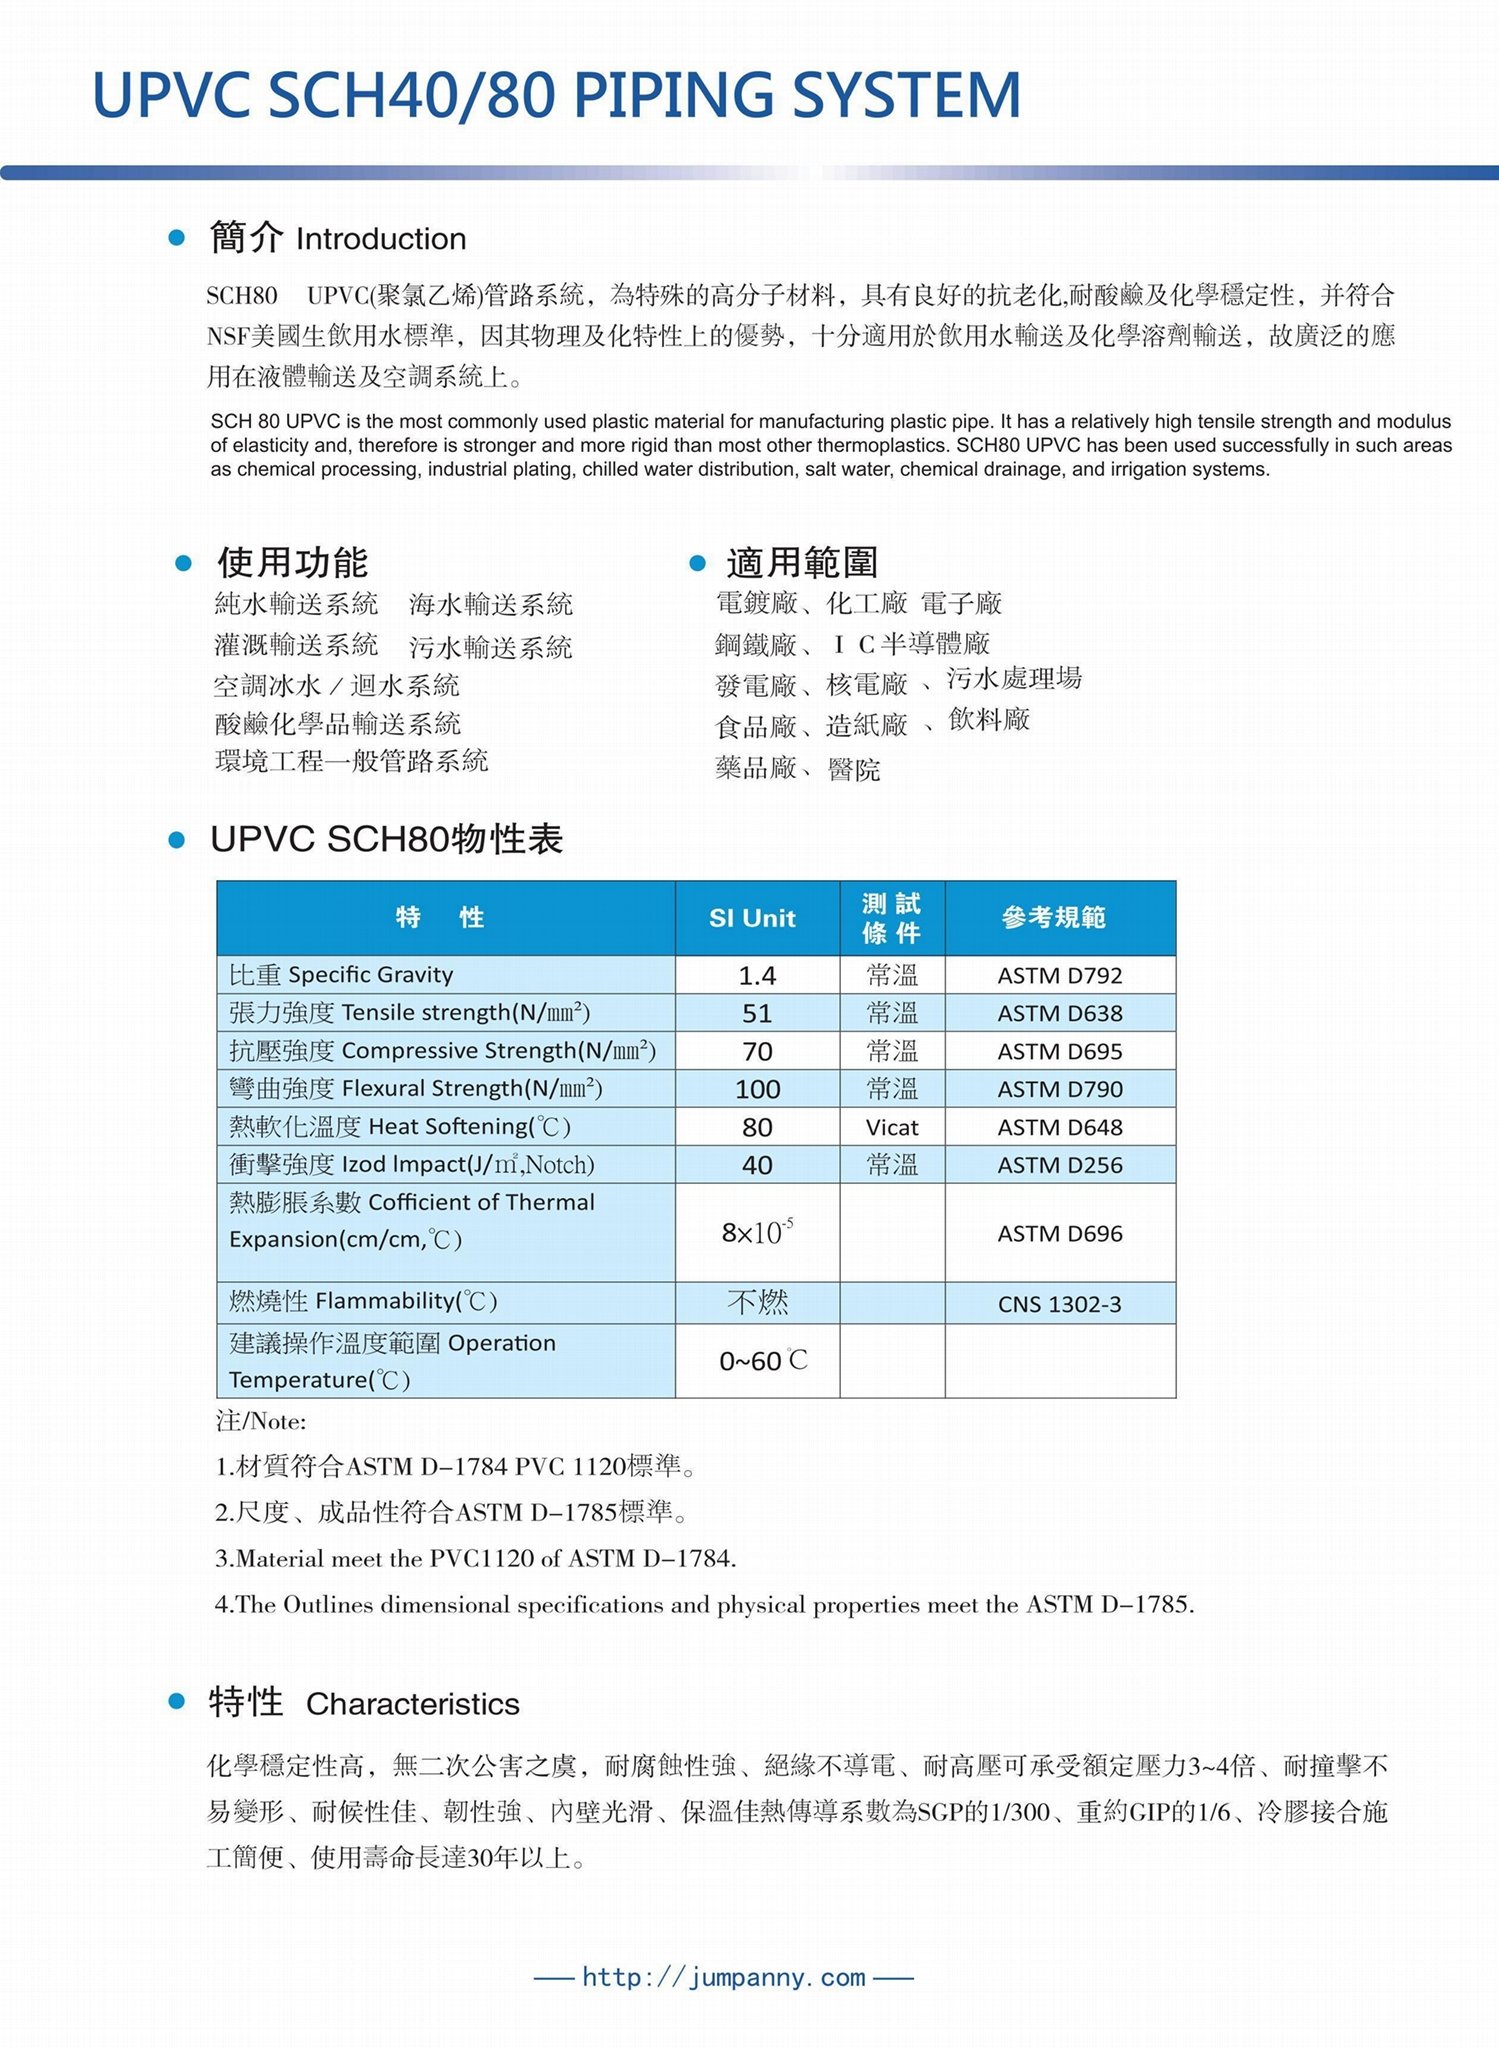 UPVC SCH80管路閥類系統 2